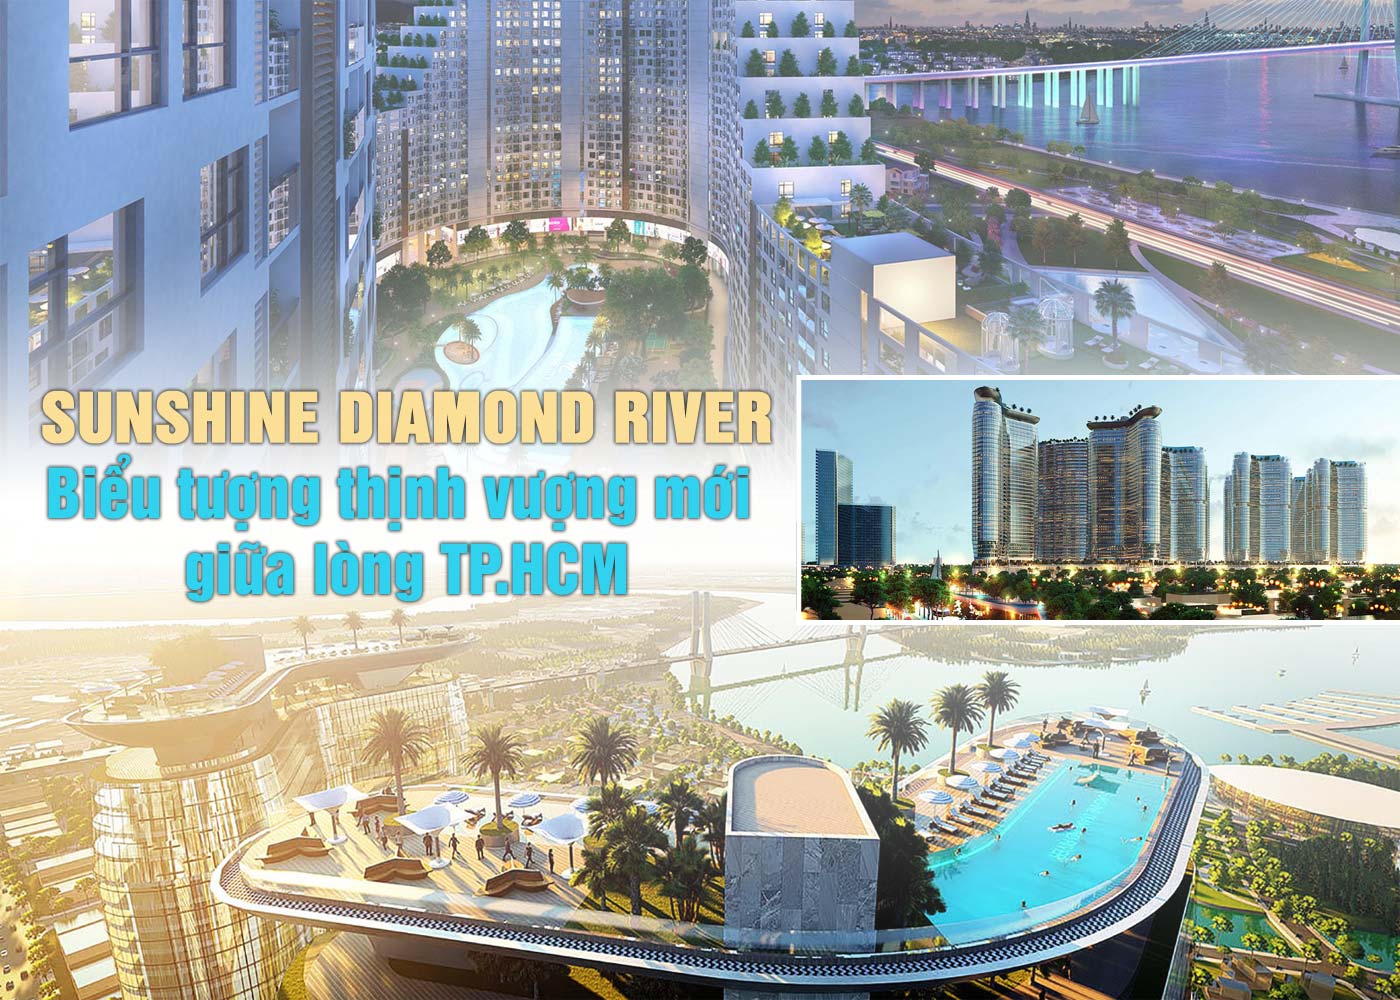 Sunshine Diamond River - biểu tượng thịnh vượng mới giữa lòng TP.HCM - Ảnh 1